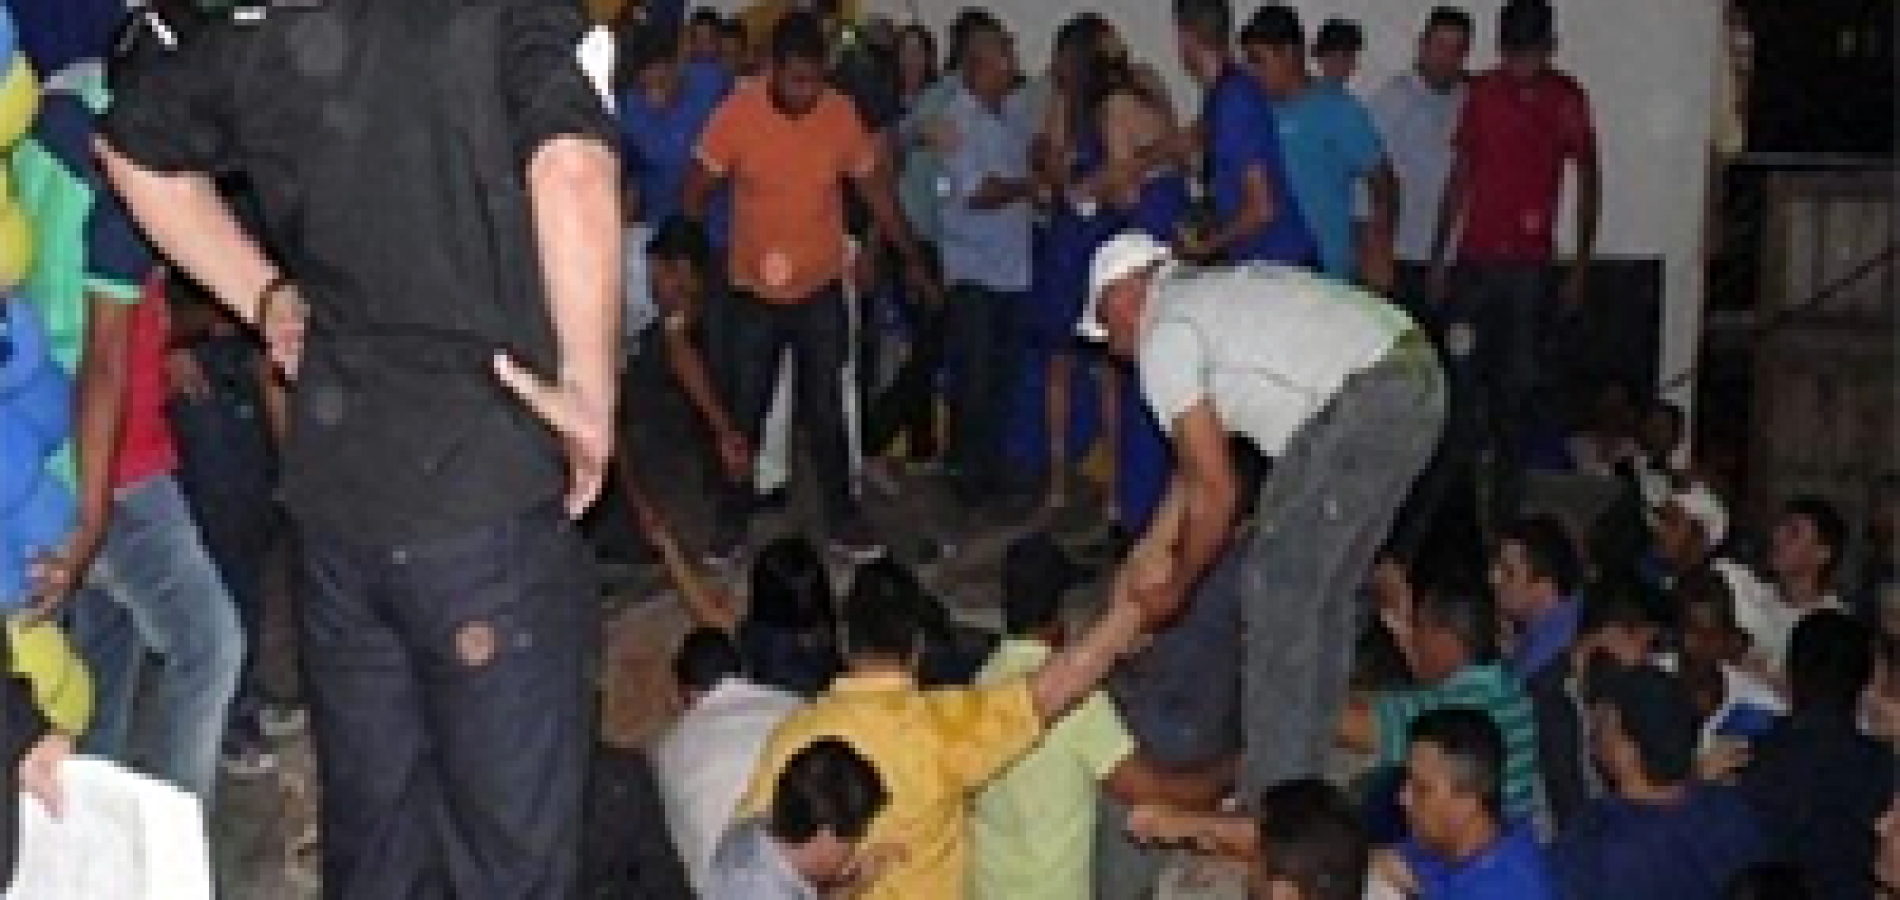 Palanque cede no Ceará e políticos caem em buraco durante convenção